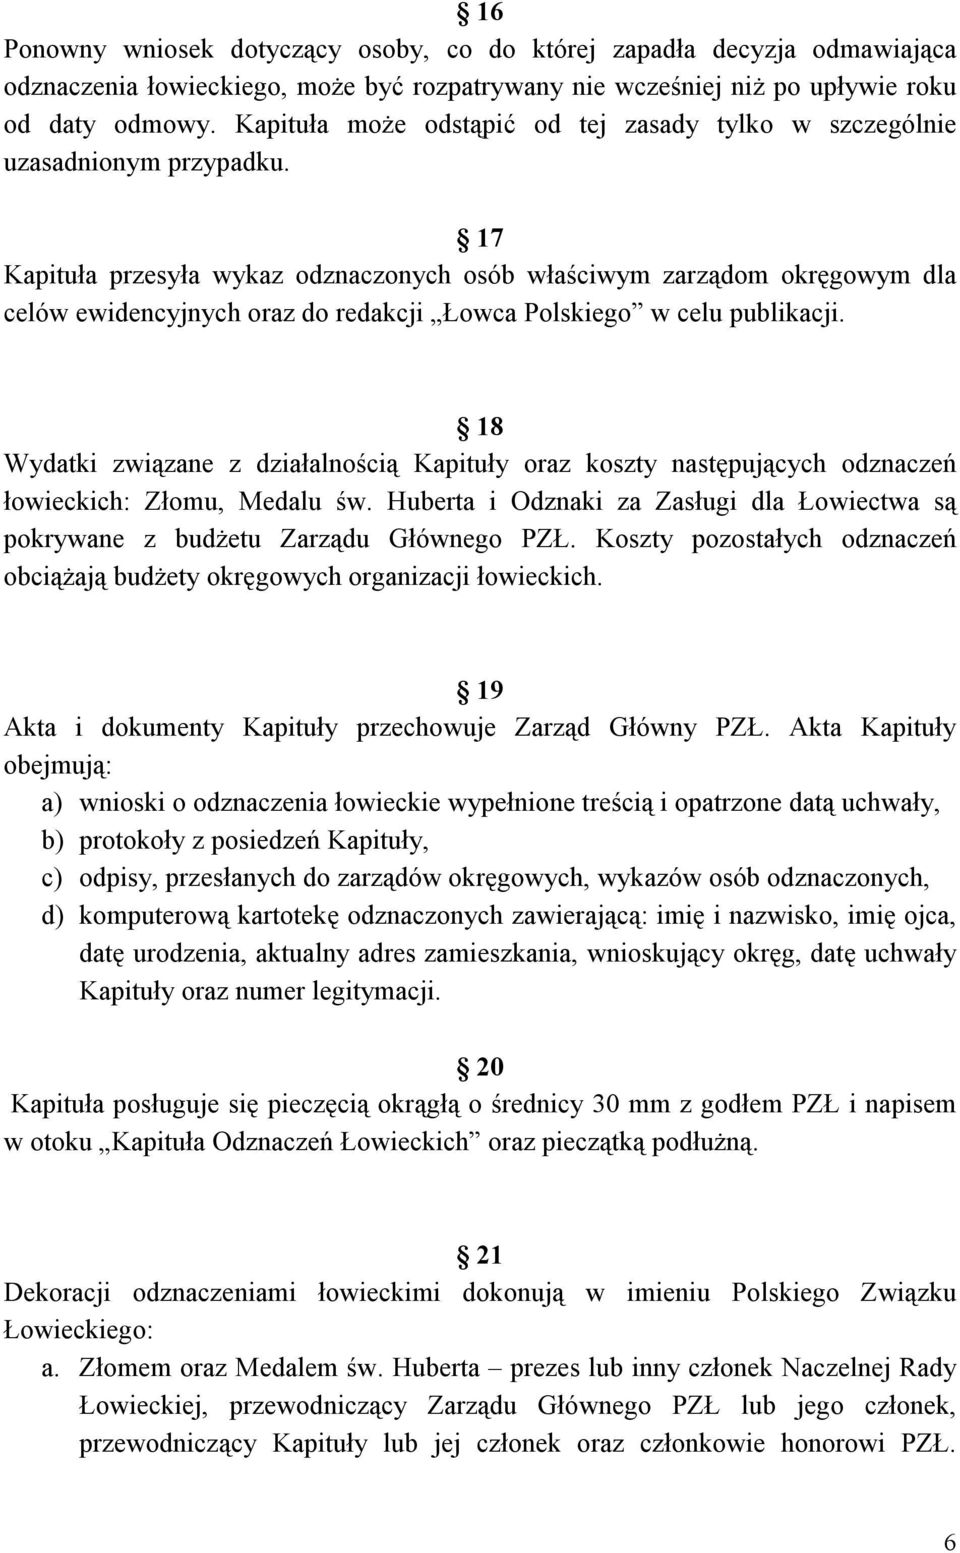 17 Kapituła przesyła wykaz odznaczonych osób właściwym zarządom okręgowym dla celów ewidencyjnych oraz do redakcji Łowca Polskiego w celu publikacji.